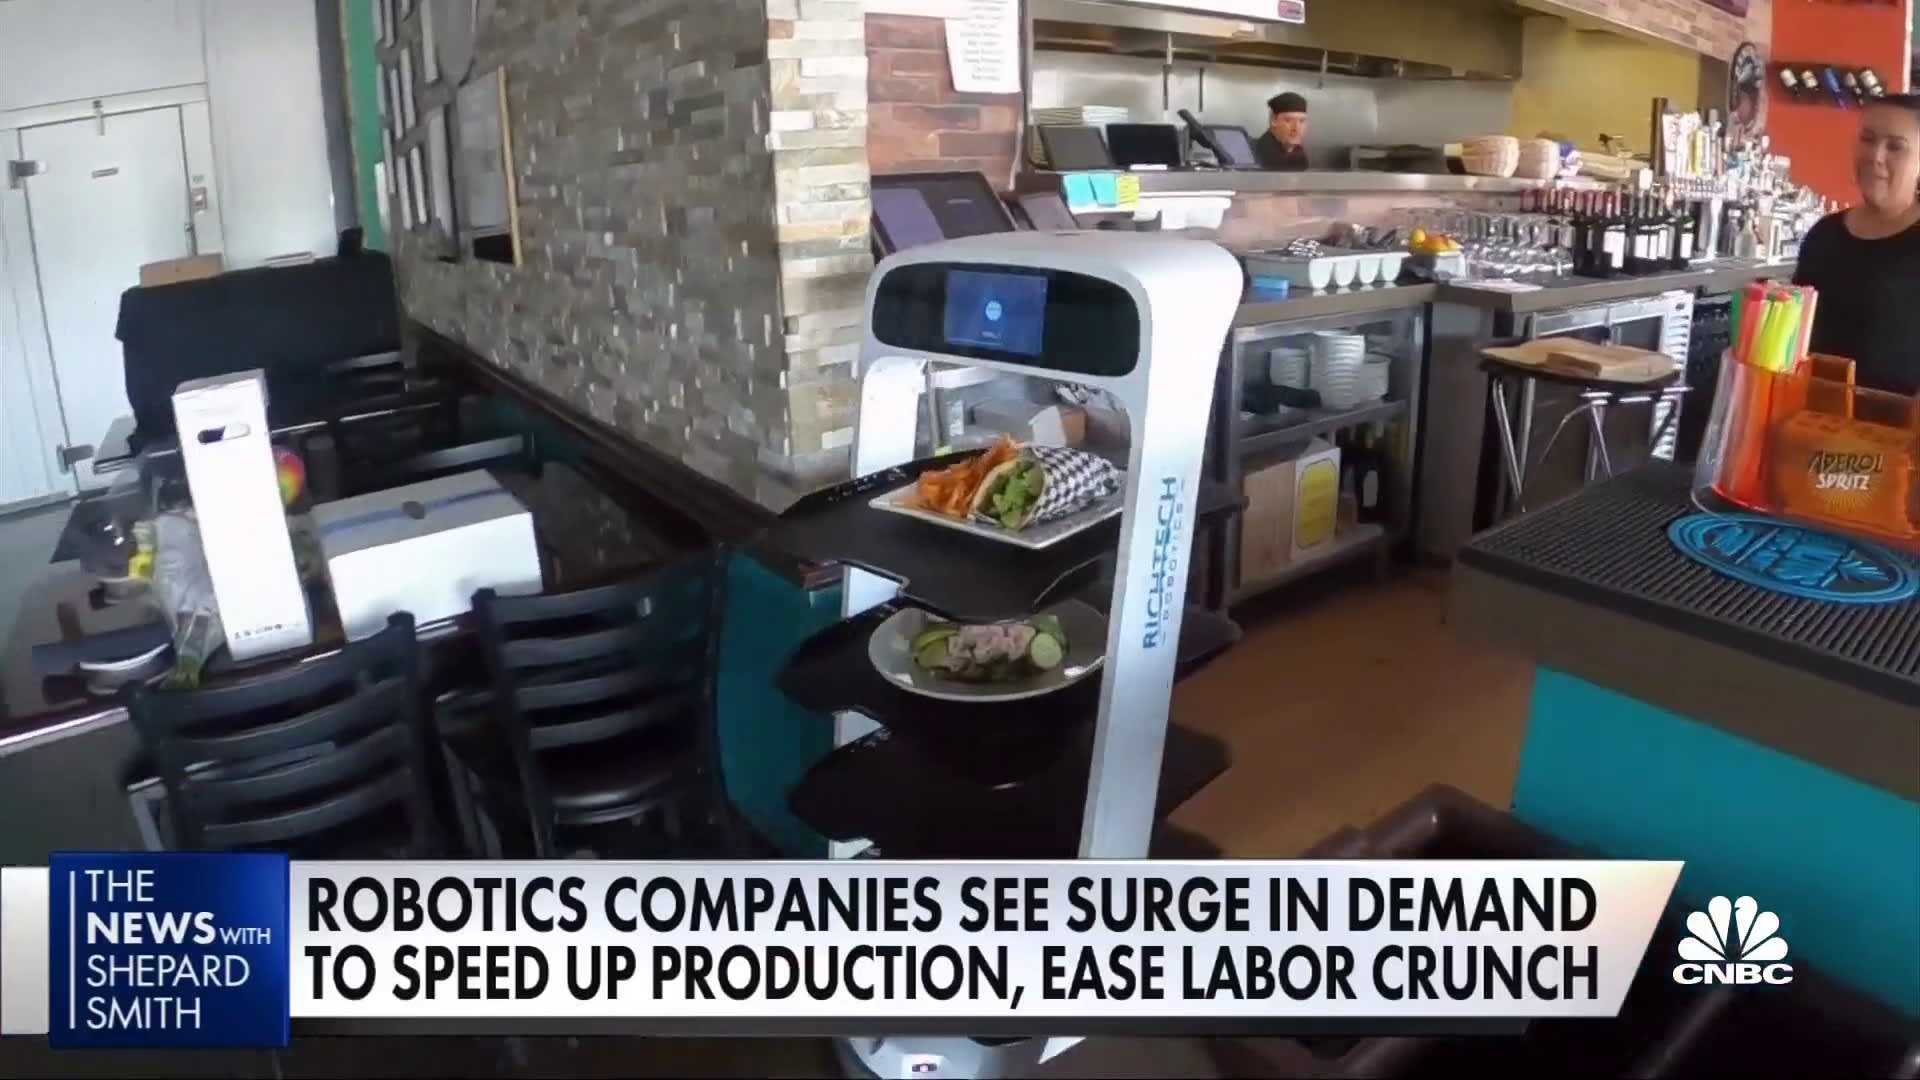 Thiếu lao động trầm trọng, nhiều nhà hàng phải dùng robot để phục vụ